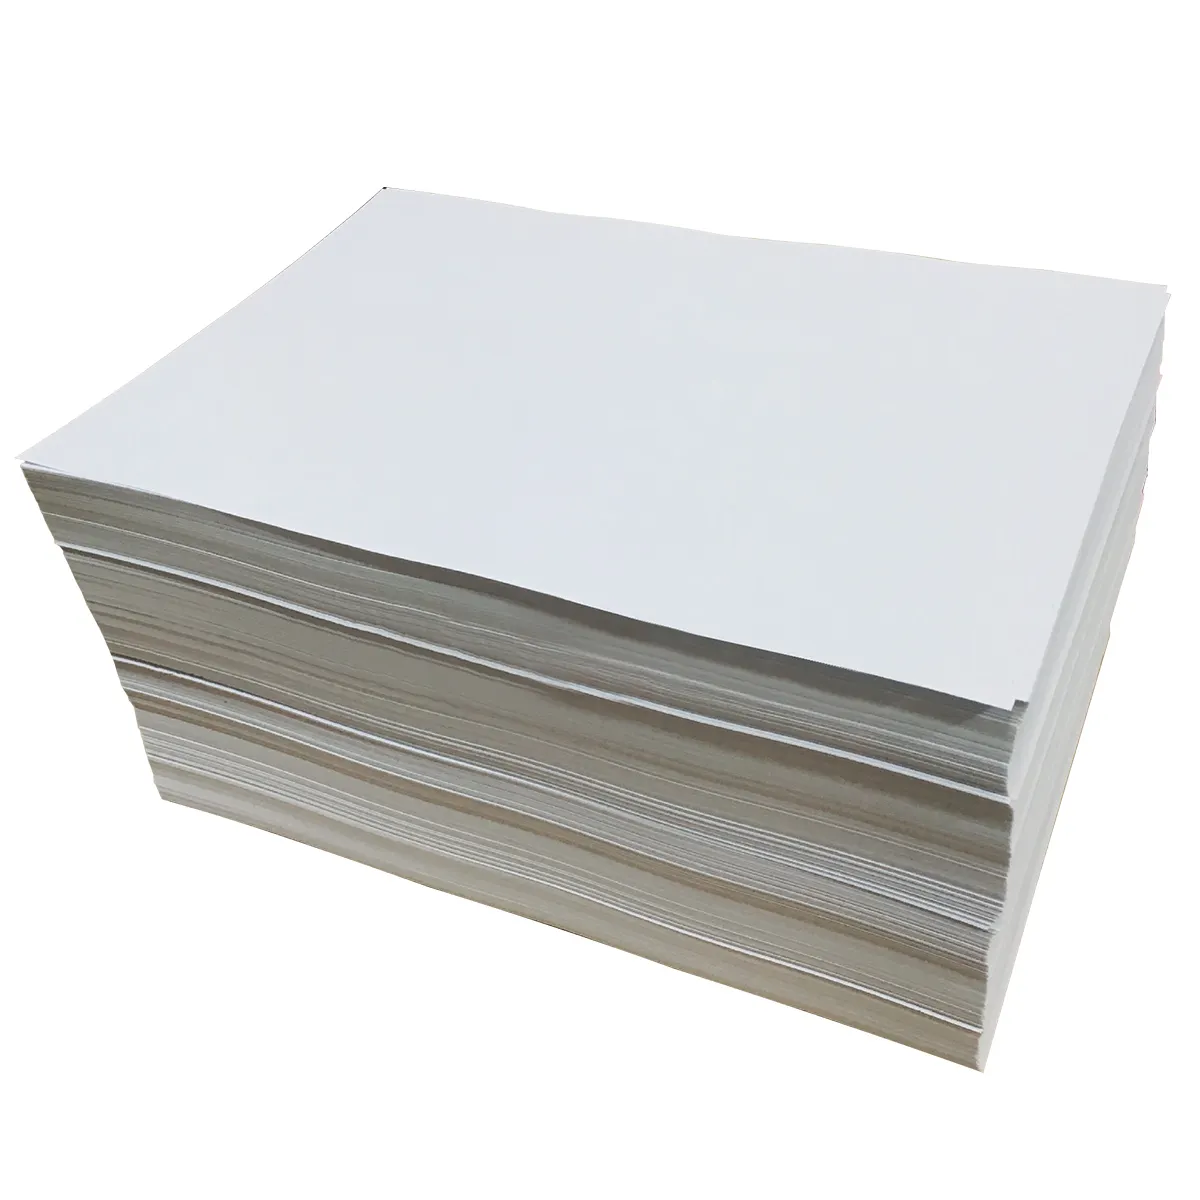 80gsm กระดาษแผ่นสีขาวปล่อยกระดาษเคลือบซิลิโคน